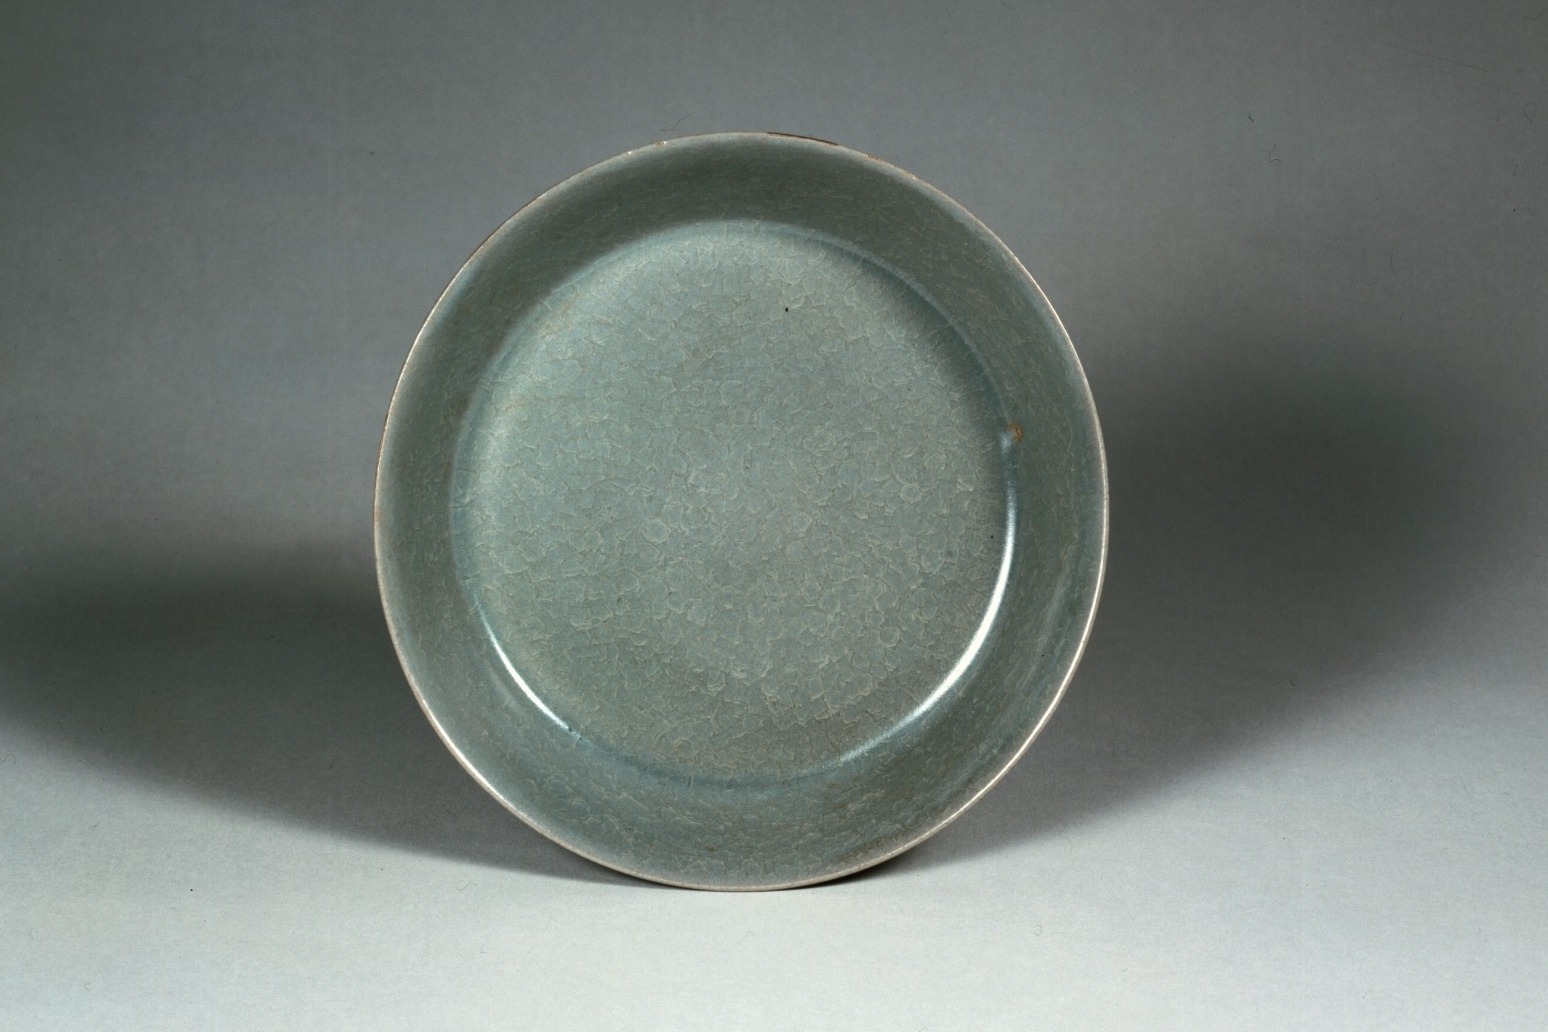 British Museum dish found to be rare Chinese artefact 